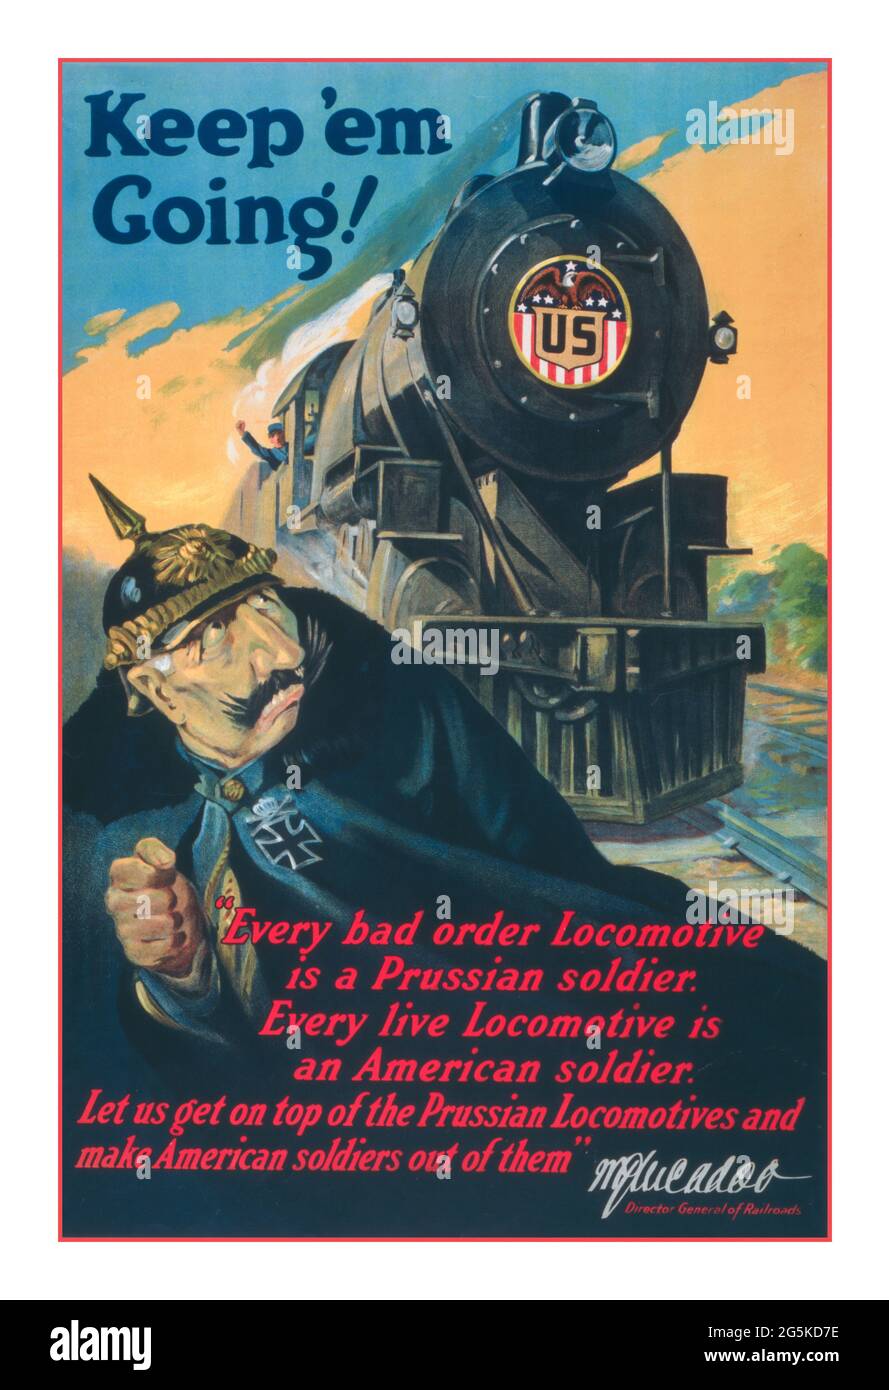 WW1 Propaganda USA Poster 'Keep 'em Going'! / Ketterlinus Phila. Poster che mostra un soldato tedesco in fuga da una locomotiva in arrivo che porta insegne, 'U.S.' McAdoo, W. G. (William Gibbs), 1863-1941. [1917] Guerra Mondiale, 1914-1918--aspetti economici e industriali--Stati Uniti - Guerra Mondiale, 1914-1918--Trasporti - locomotive ferroviarie--1910-1920 litografie--colore--1910-1920. Poster di guerra--americano--1910-1920. "Ogni locomotiva di cattivo ordine è un soldato prussiano. Ogni locomotiva dal vivo è un soldato americano. Mettiamoci in cima alle locomotive prussiane e facciamo fuori soldati americani Foto Stock